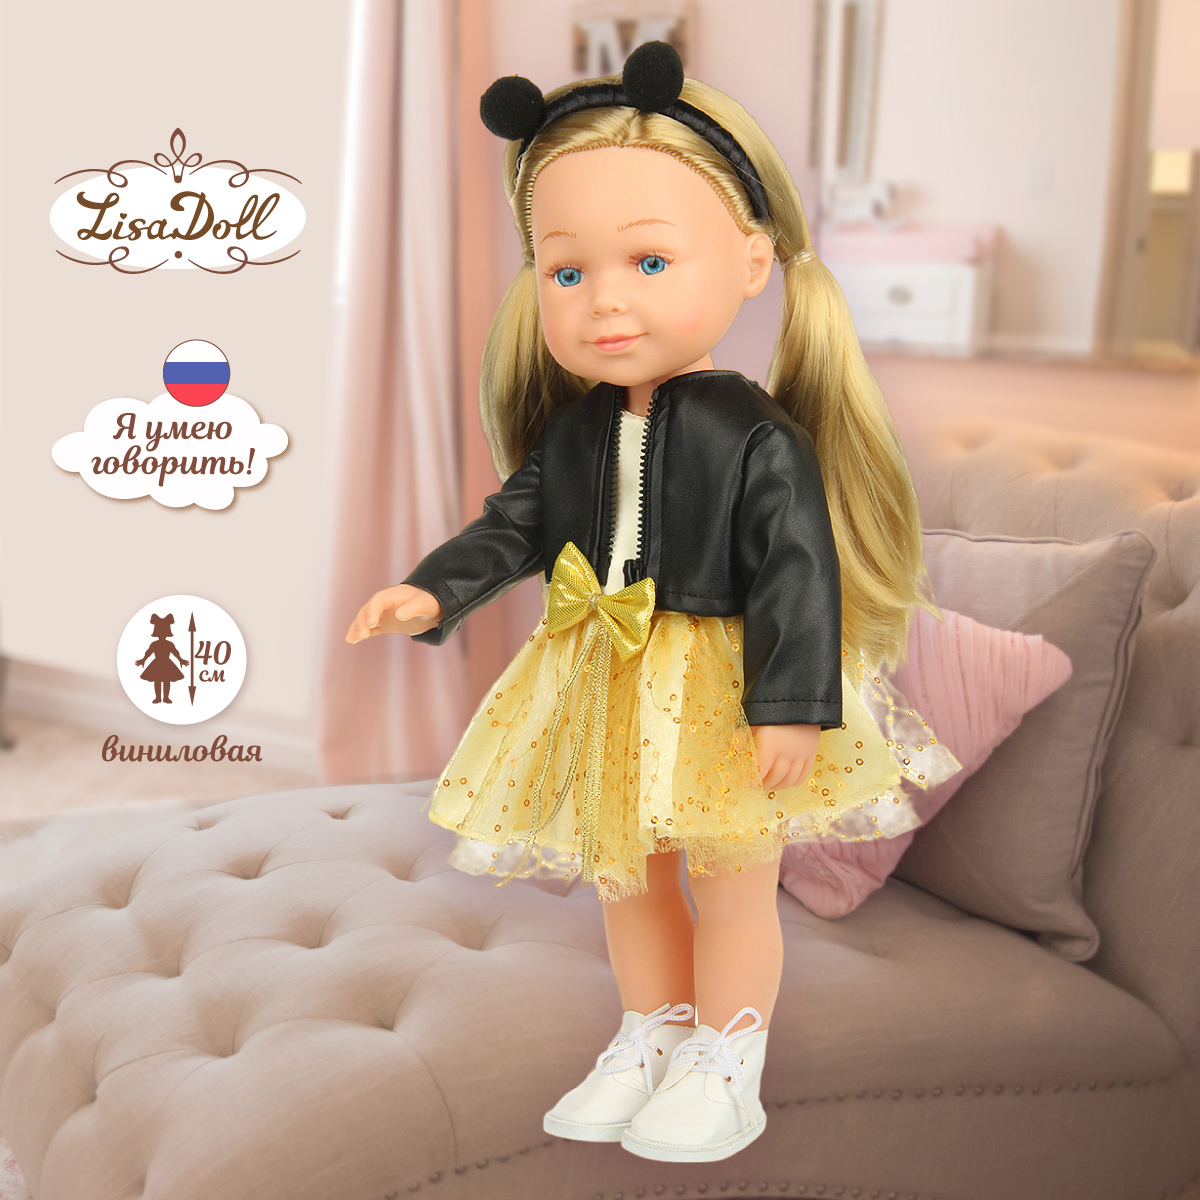 Кукла говорящая Lisa Doll интерактивная 40 см 131756 - фото 1